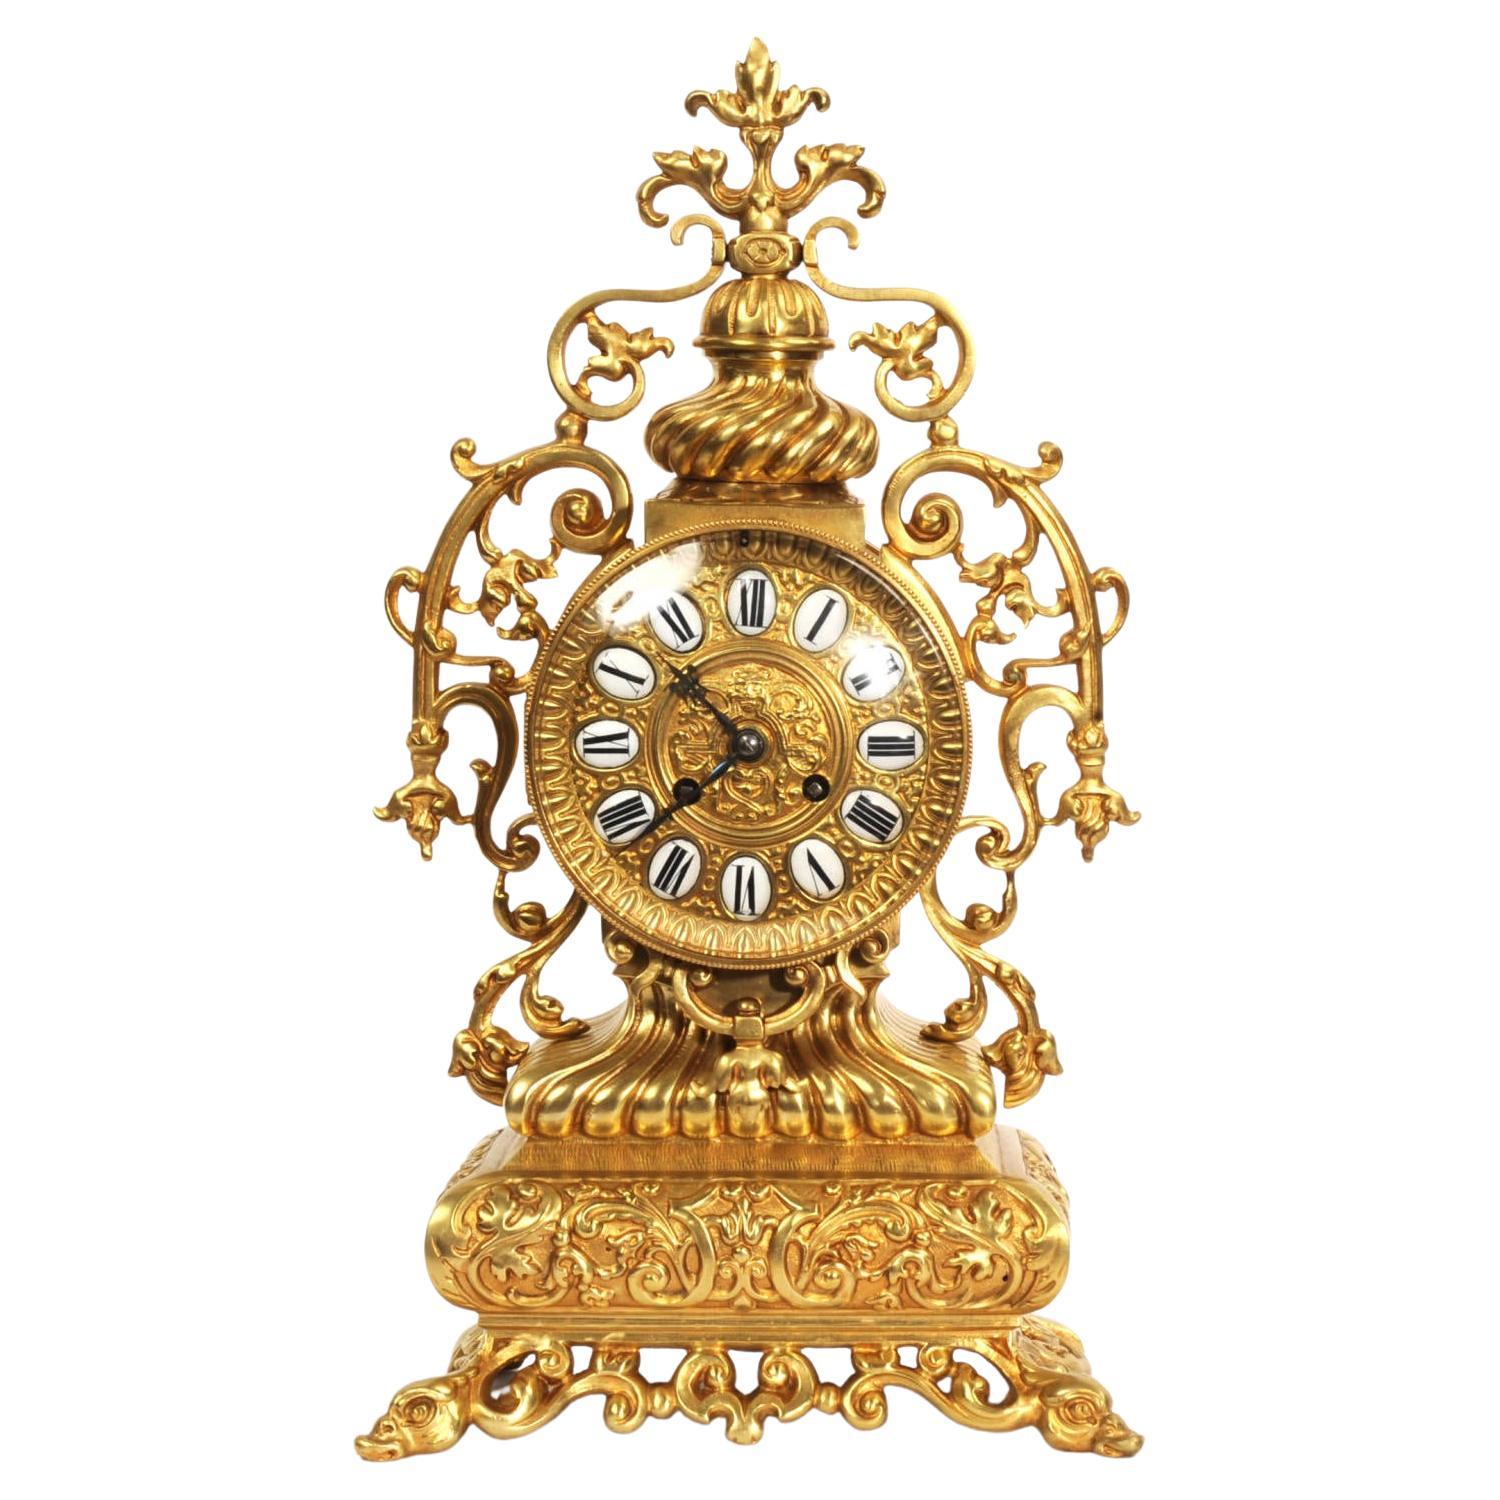 Antique French Reloj Barroco de Bronce Dorado